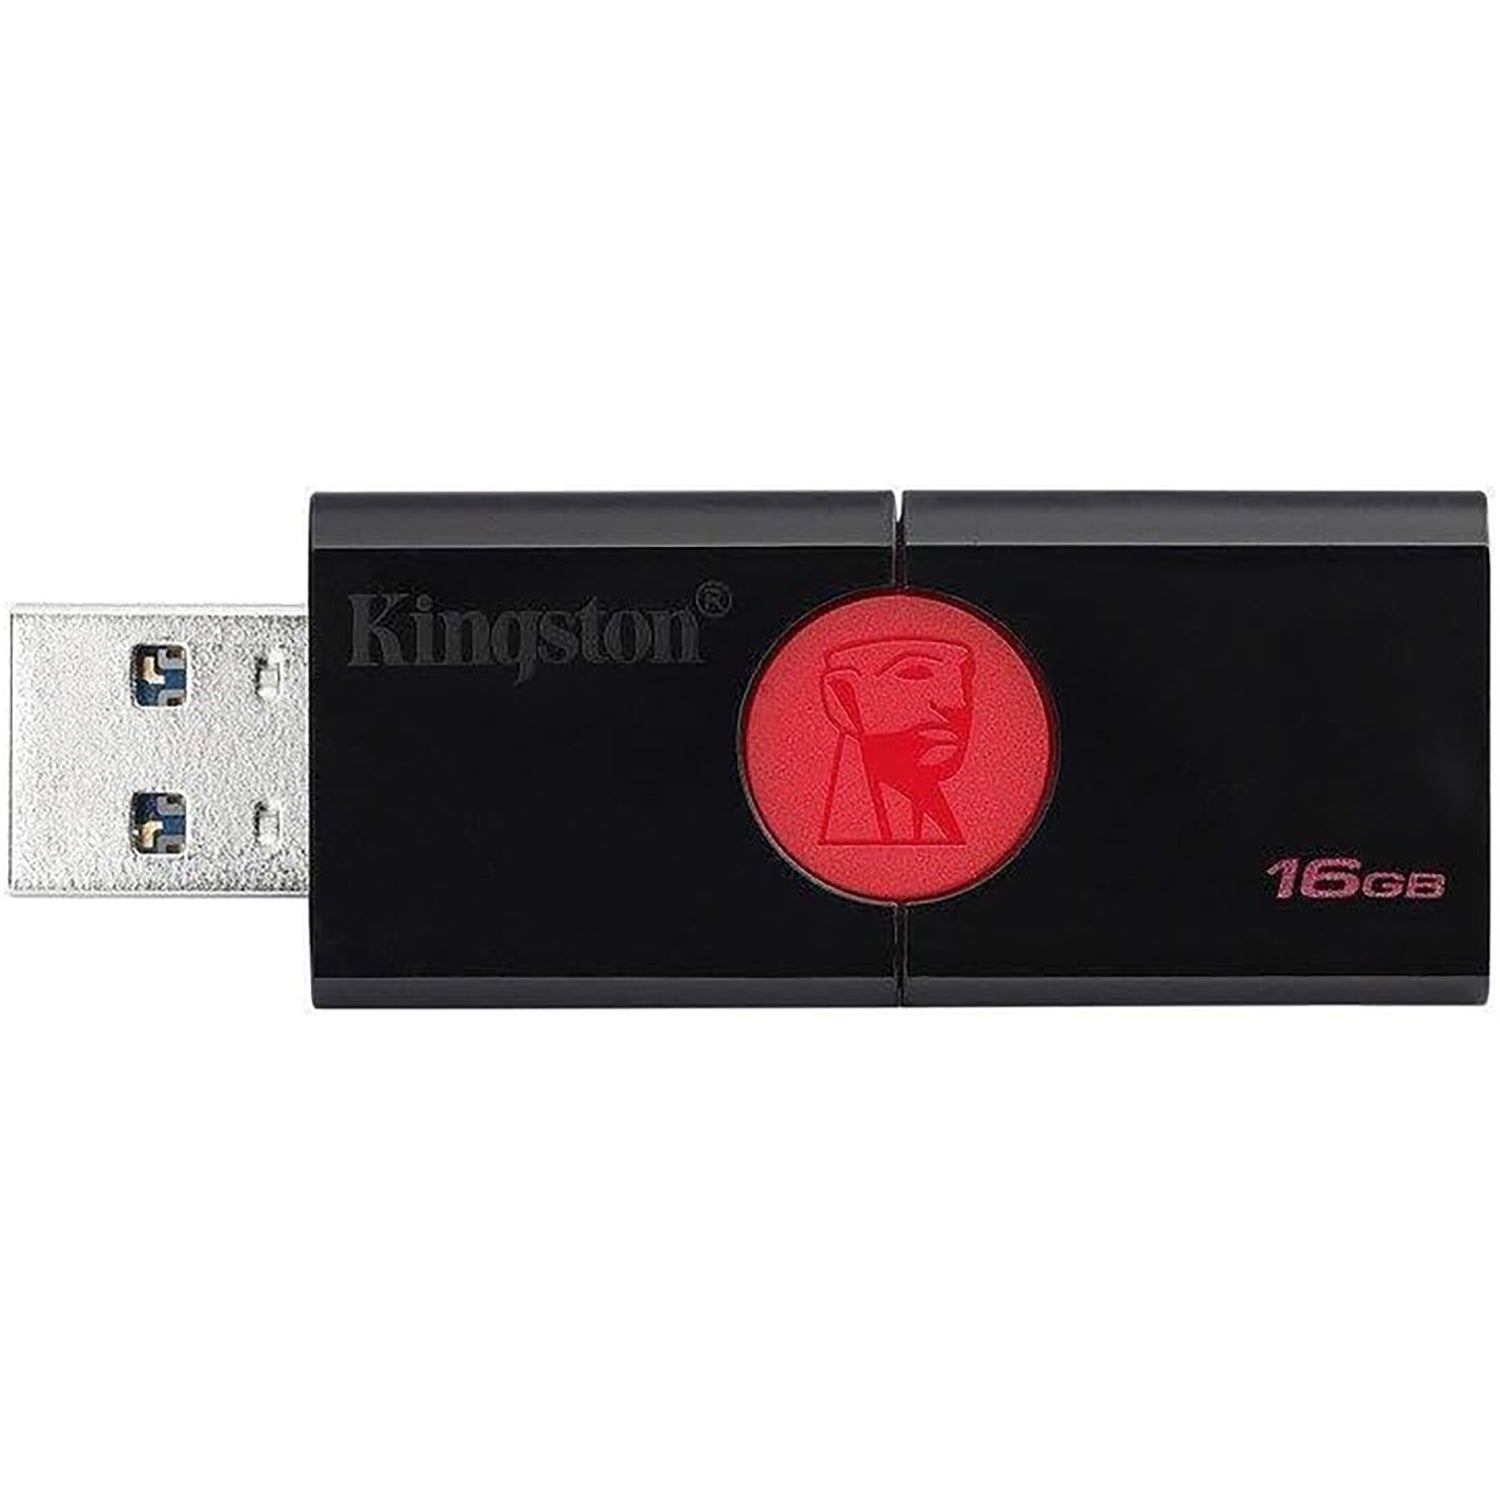 Kingston - Clé USB 3.0 DataTraveler 106, Capacité de 16GO